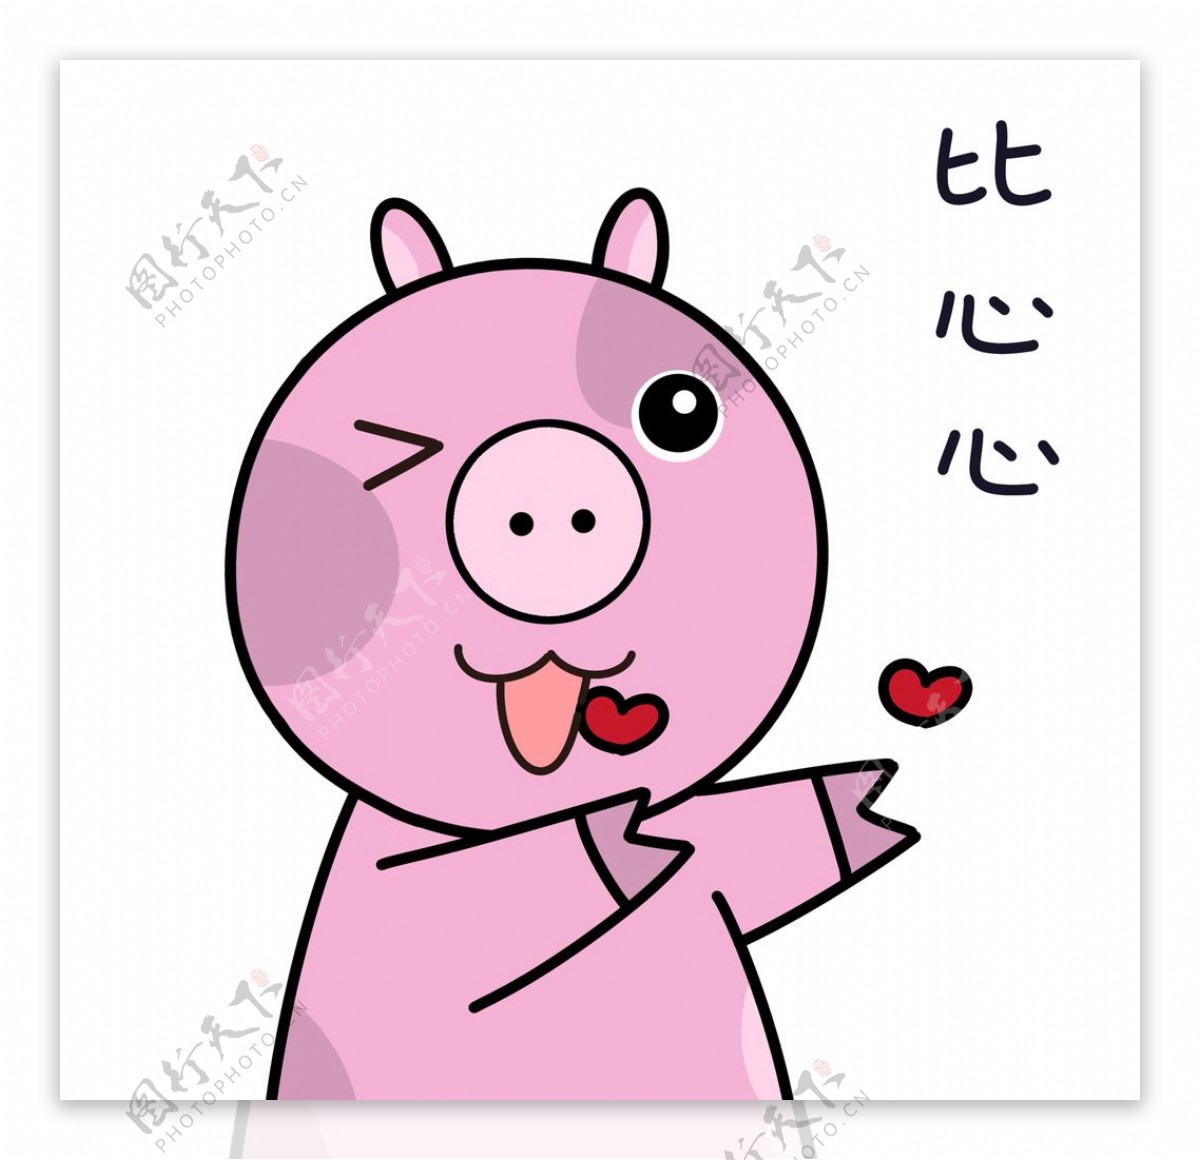 猪logo图片